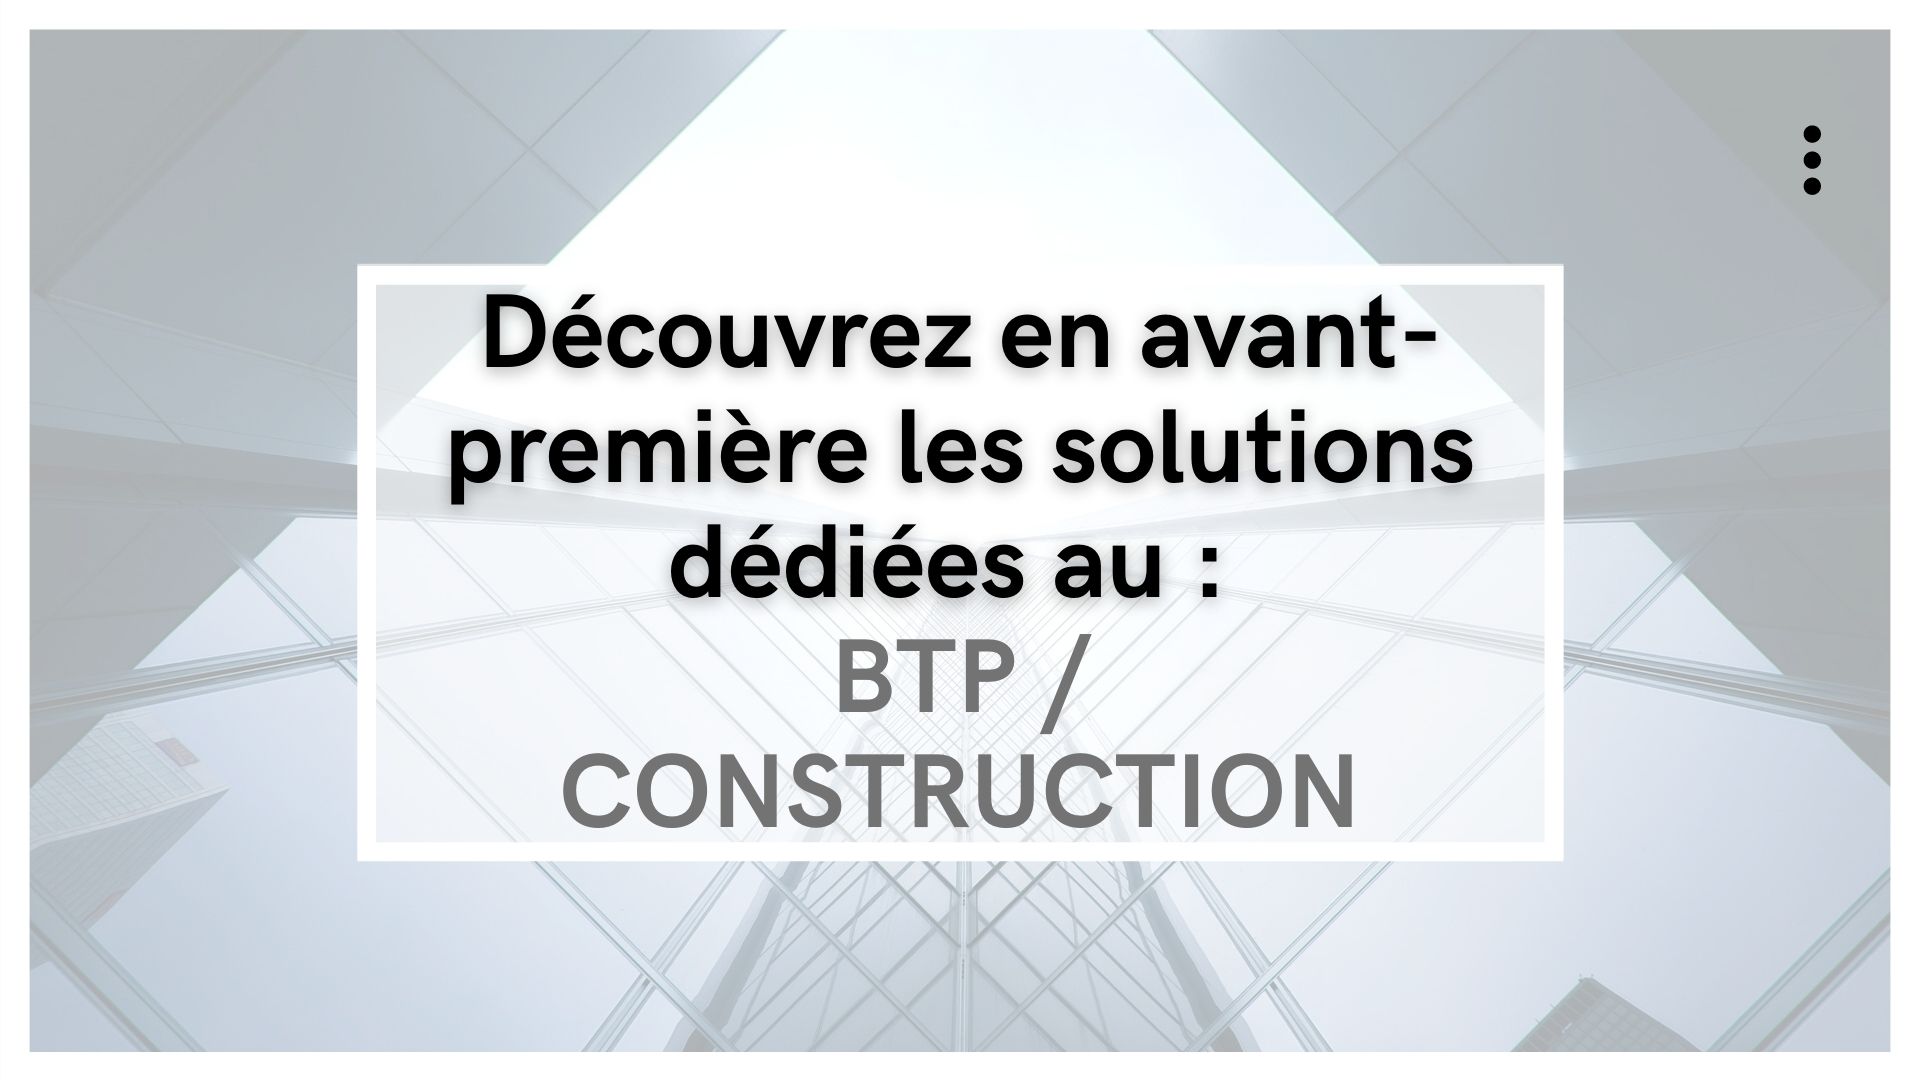 Retrouvez toutes les solutions dédiées au BTP / Construction